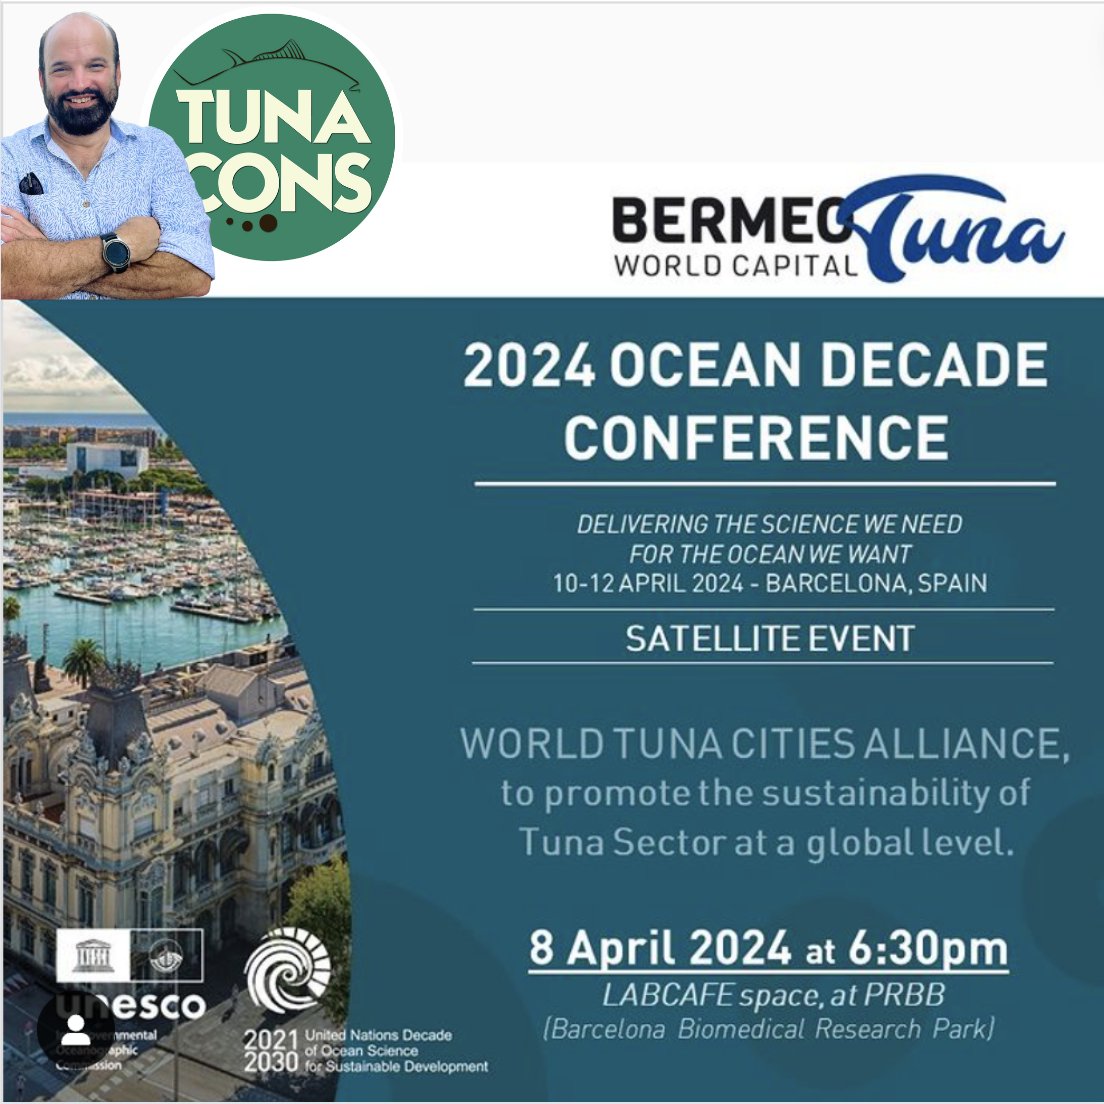 ¡ES MAÑANA!

🌊 Evento paralelo en el marco del UN #OceanDecadeConference
🗓️ 8 de abril 18:30 Espacio LabCafé de Barcelona
✅ Mundiales del Atún en favor del Desarrollo #Sostenible.

No te lo pierdas, te esperamos en Barcelona. 
Registrate aquí:
shorturl.at/cAFK9